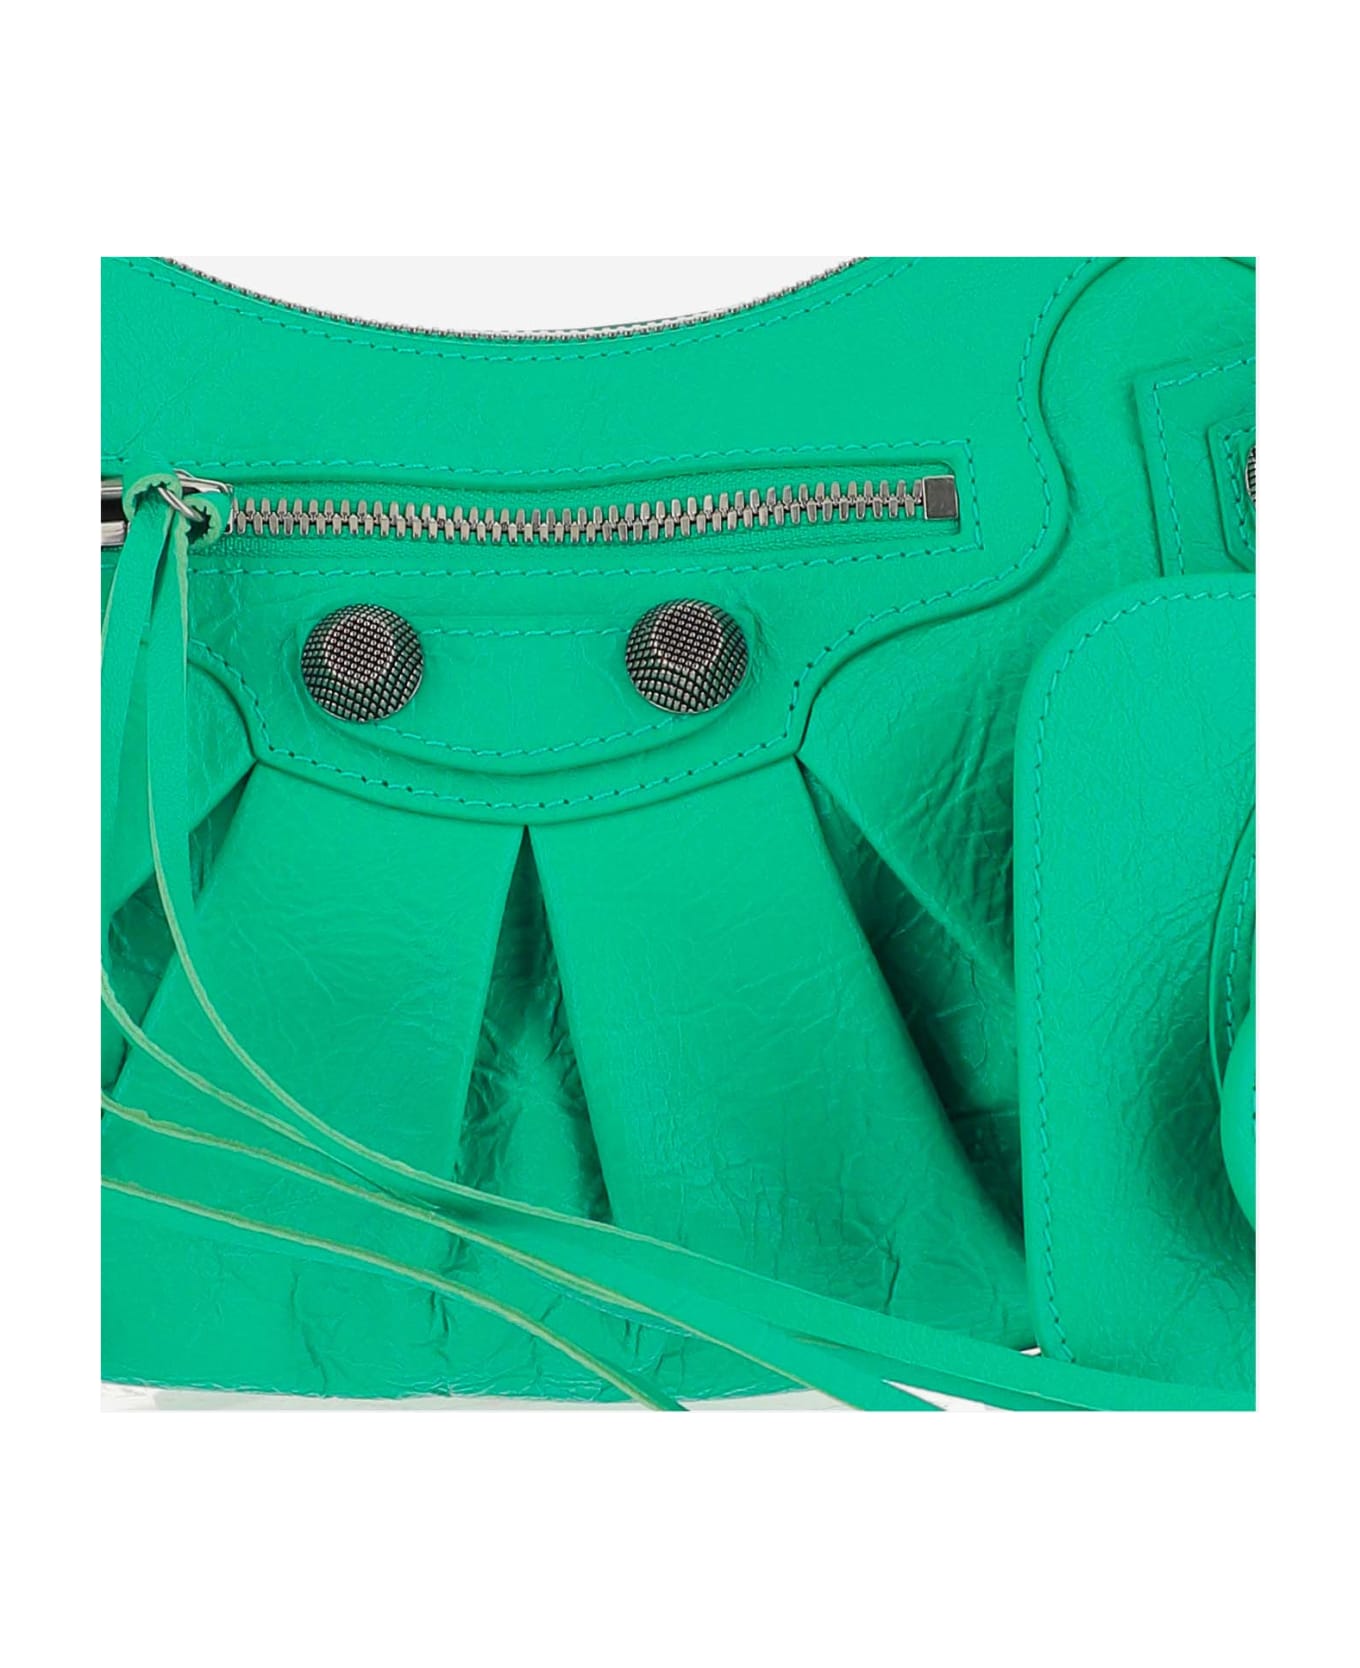 Balenciaga Le Cagole Leather Cross-body Bag - Green